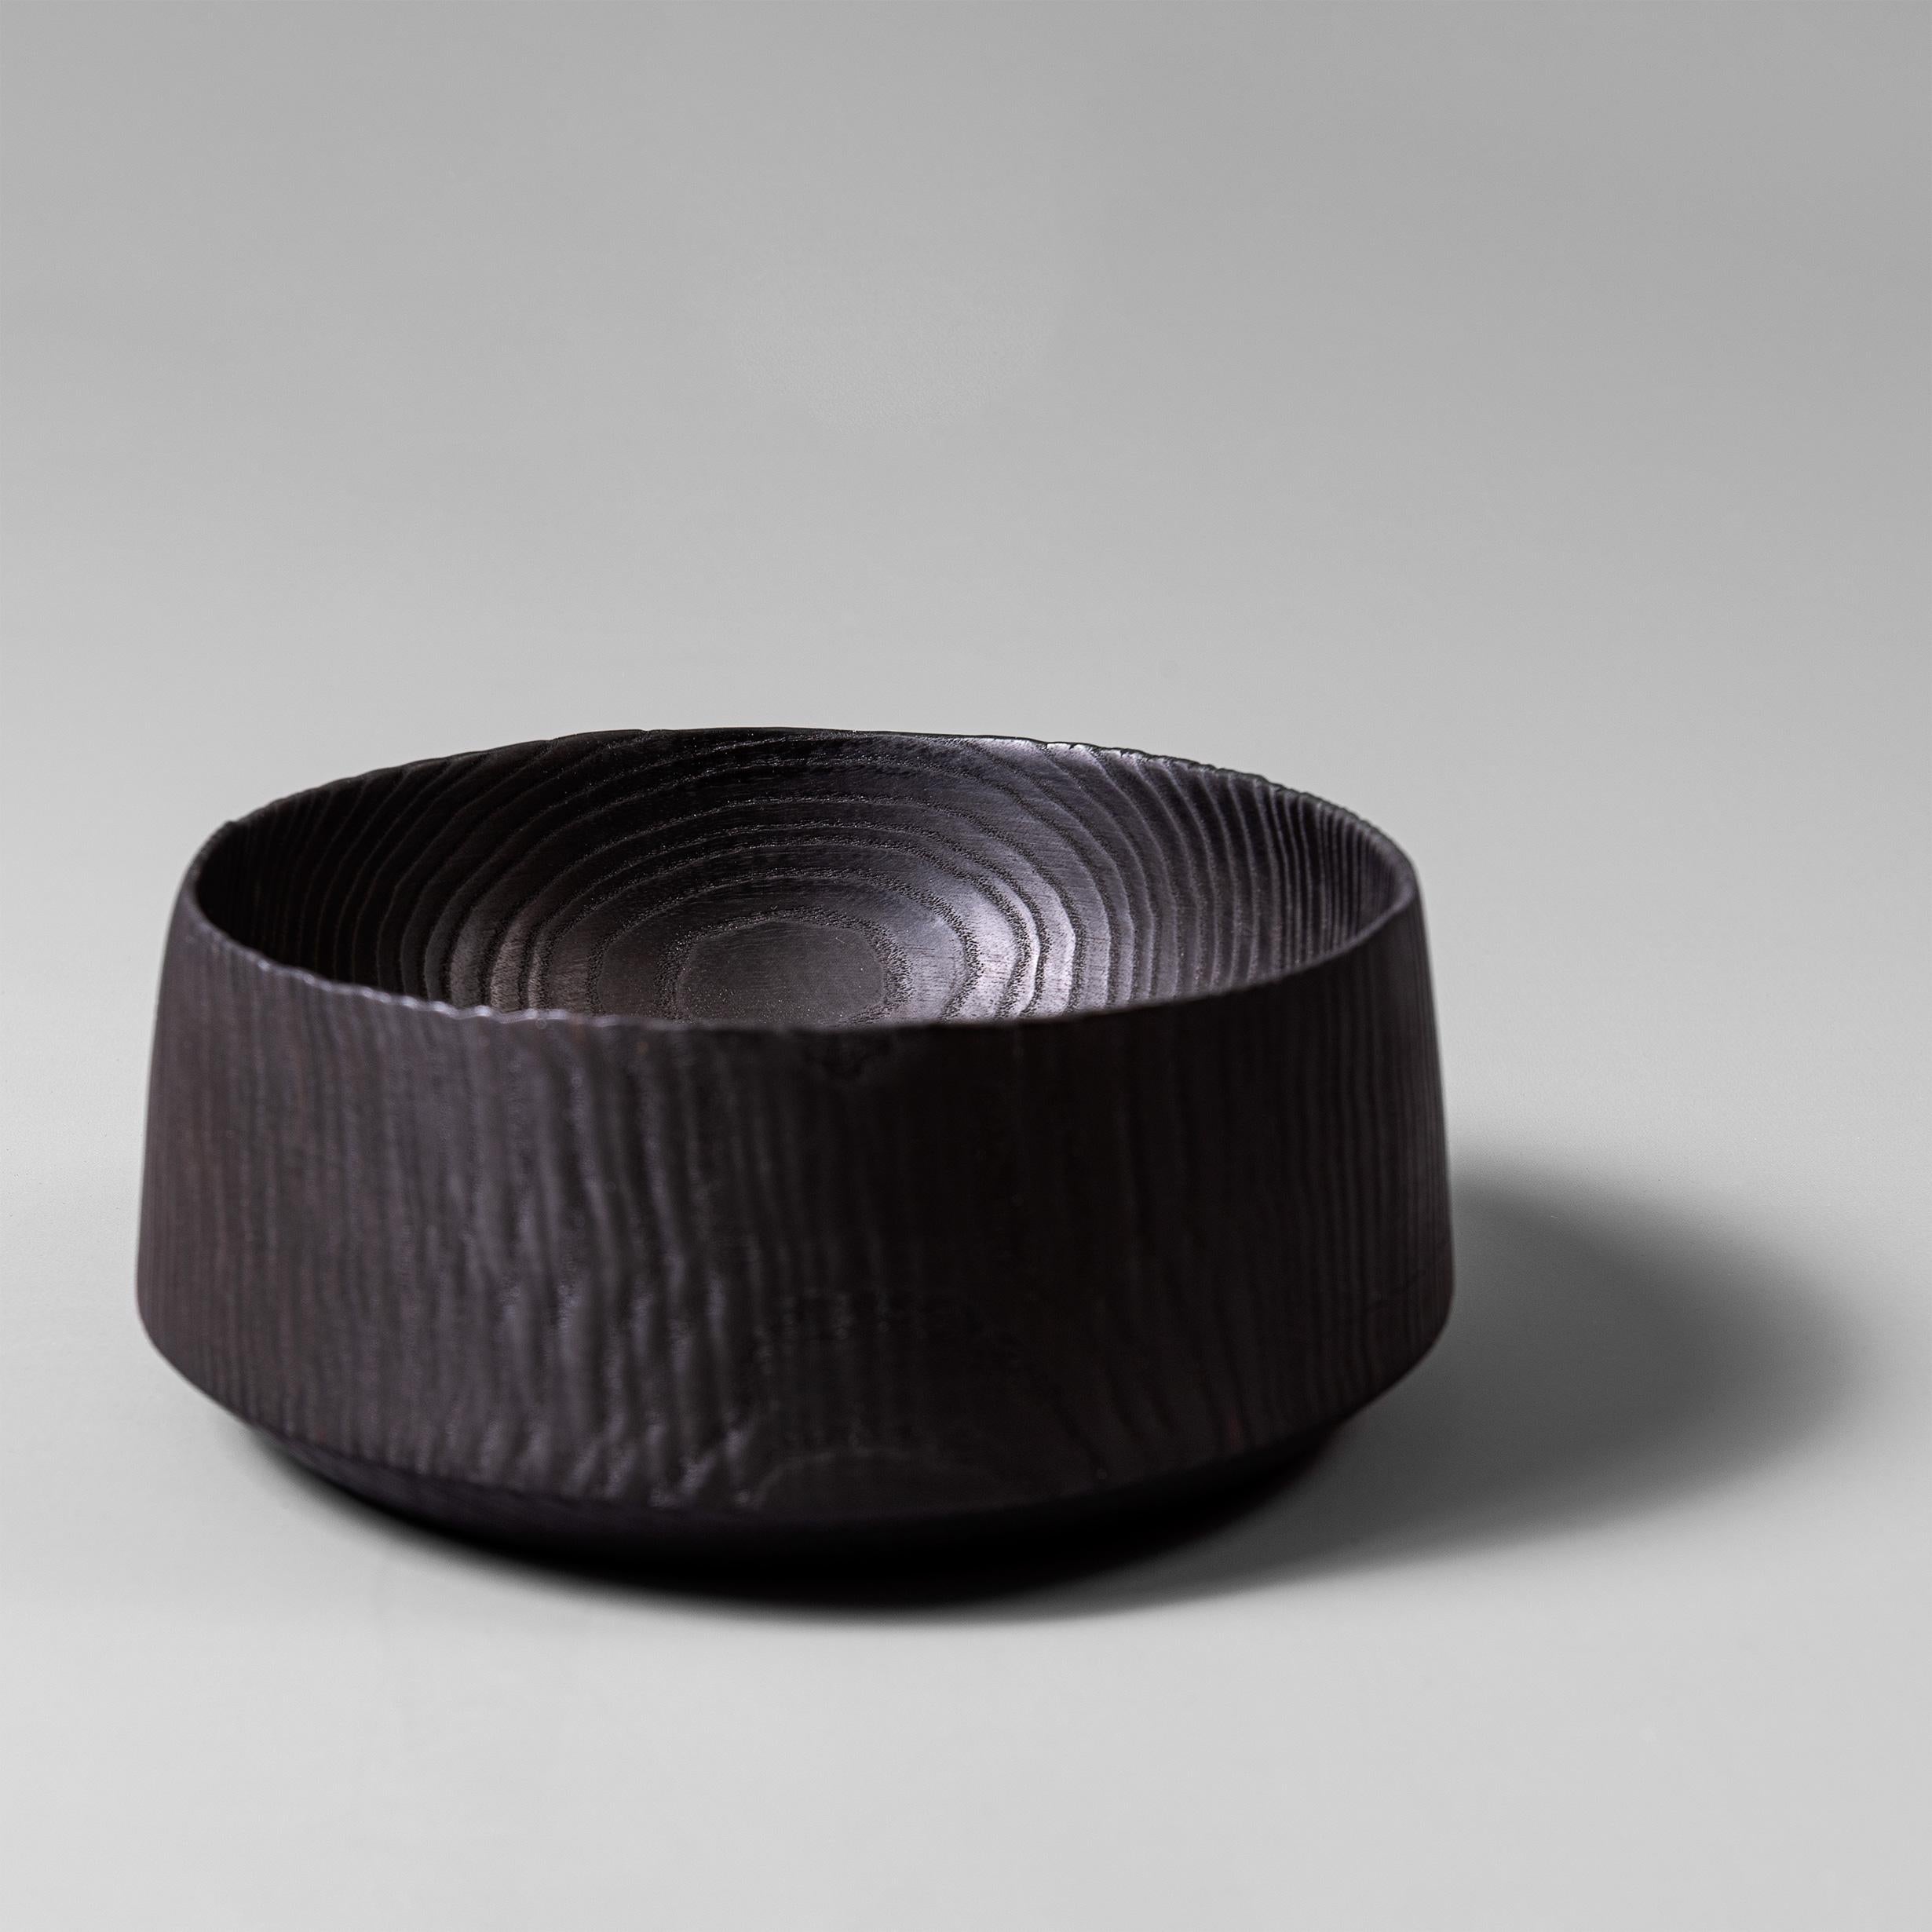 Feine traditionell handgefertigte und gedrechselte Yakisugi-Schale aus Esche. Sie werden in London nach traditionellen Techniken von Hand gefertigt und zeichnen sich durch höchste Qualität aus.
Fertiggestellt in lebensmittelechtem Öl.
Køben-Schale